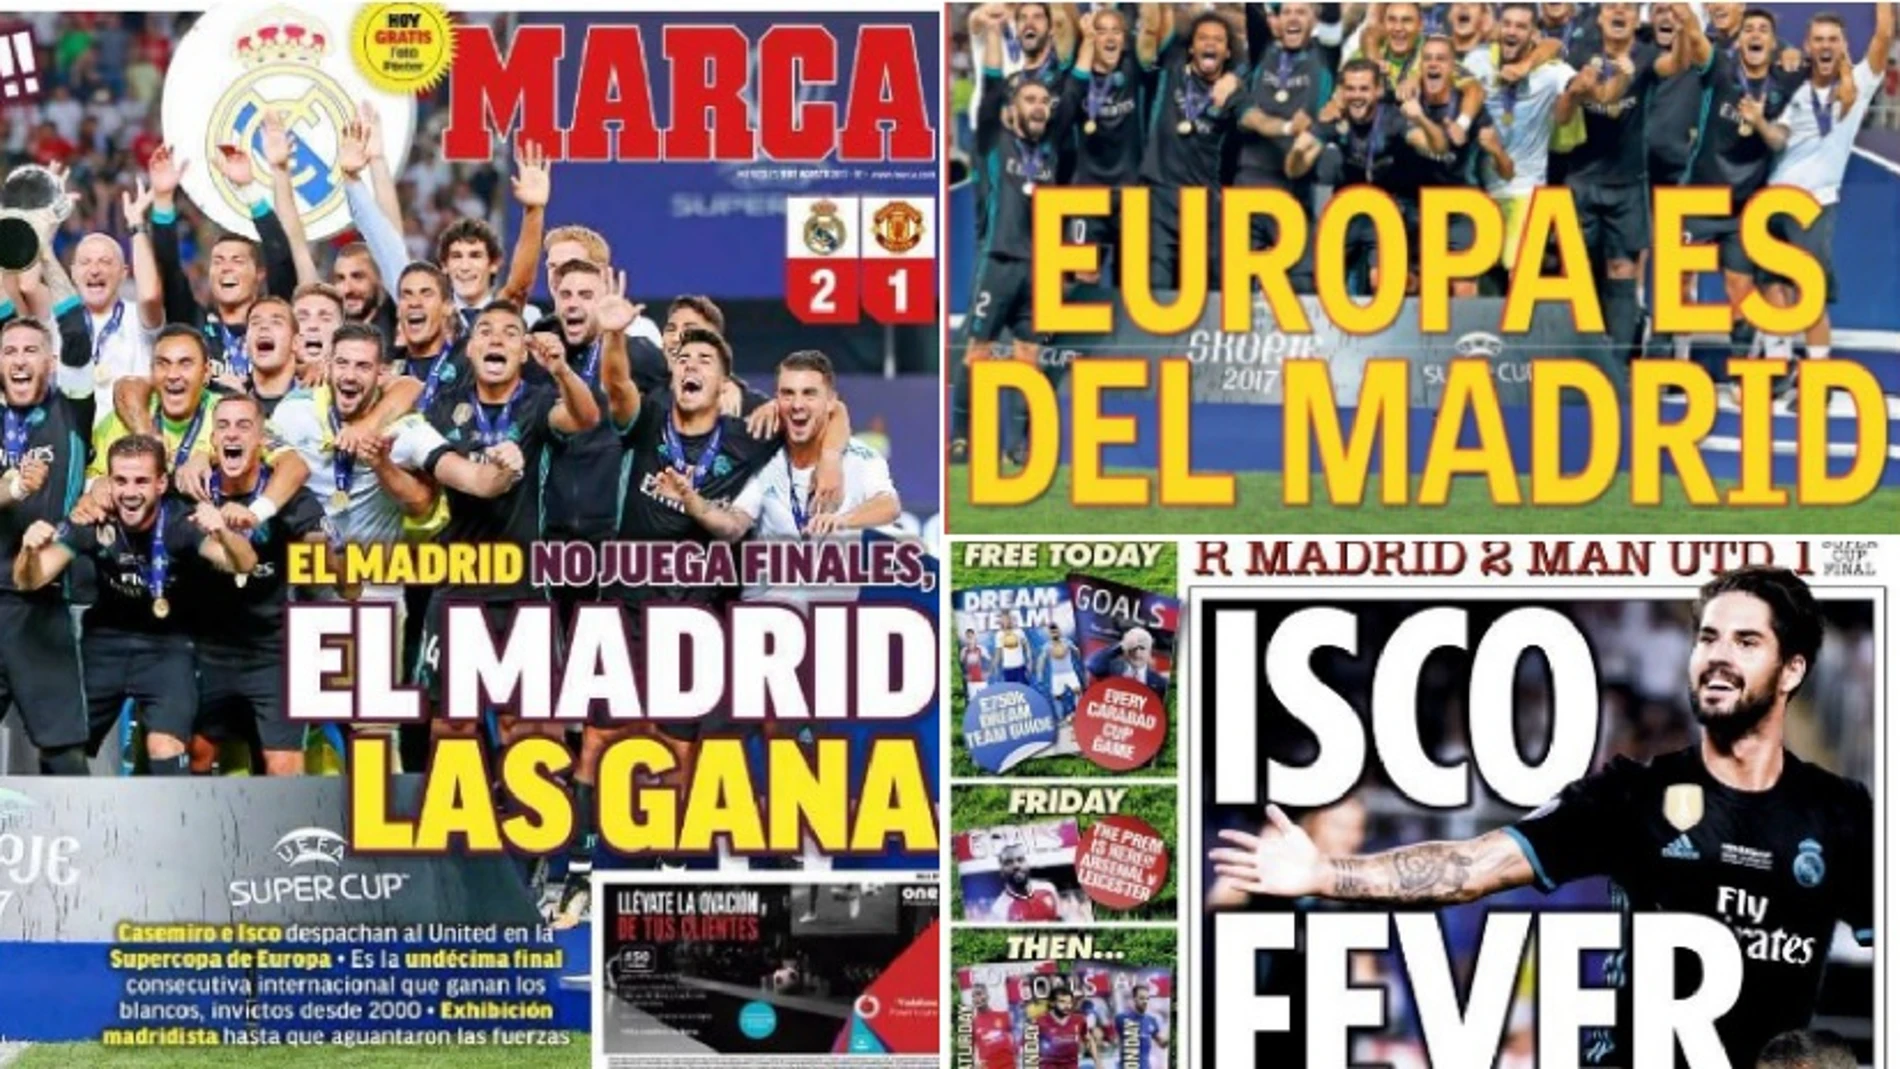 La victoria del Real Madrid en la Supercopa de Europa, protagonista en la prensa